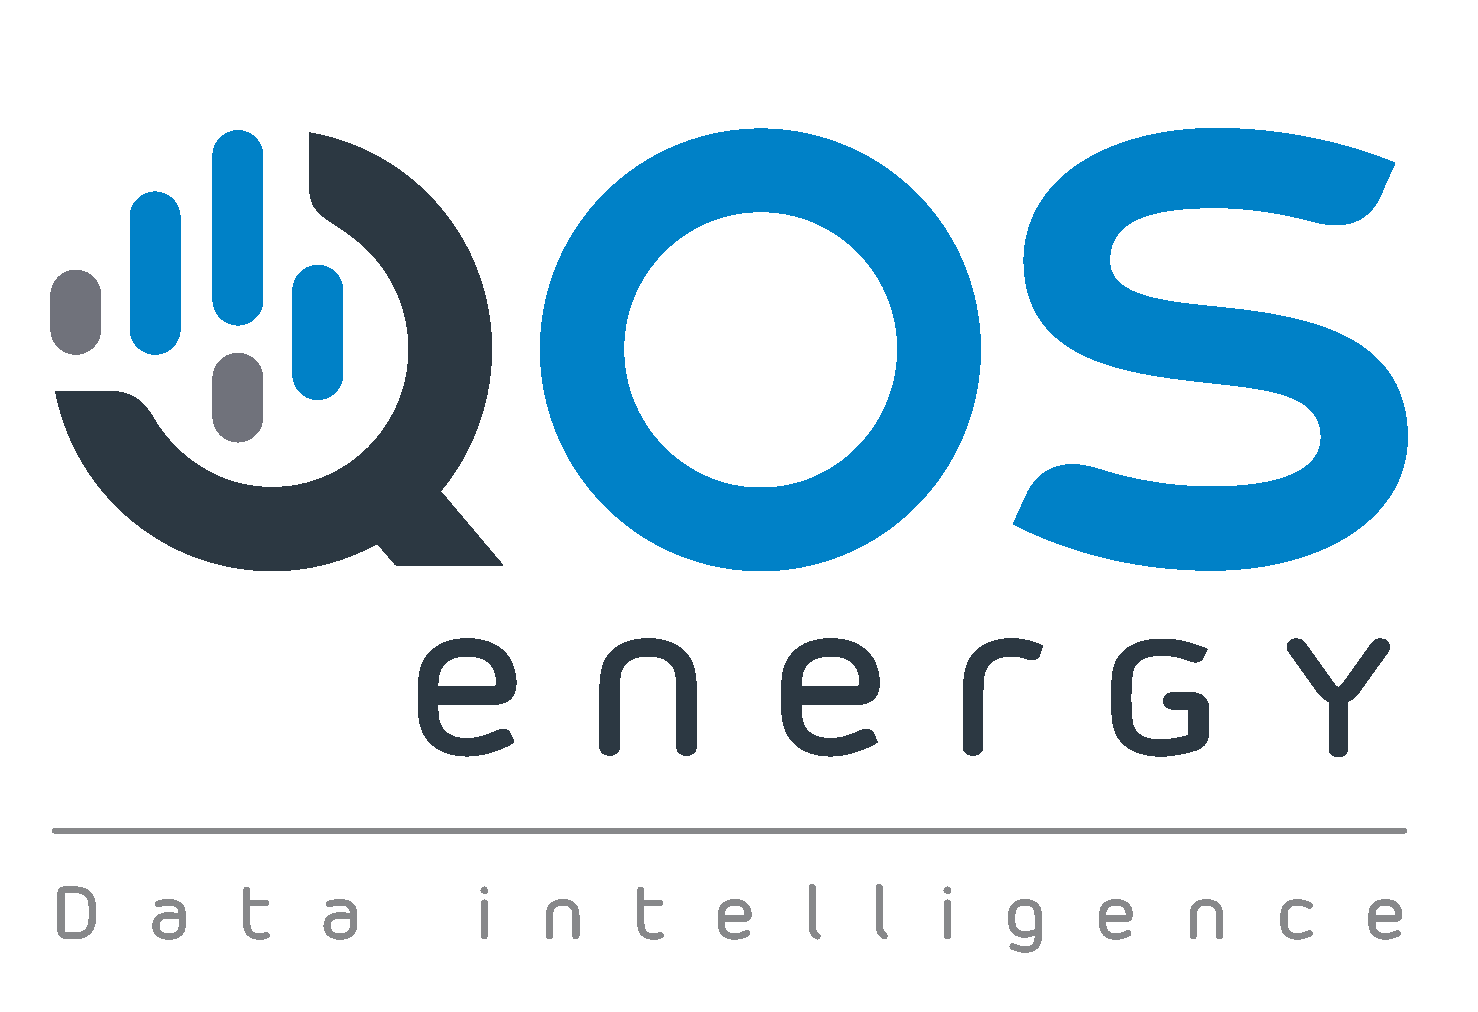 QOS Energy